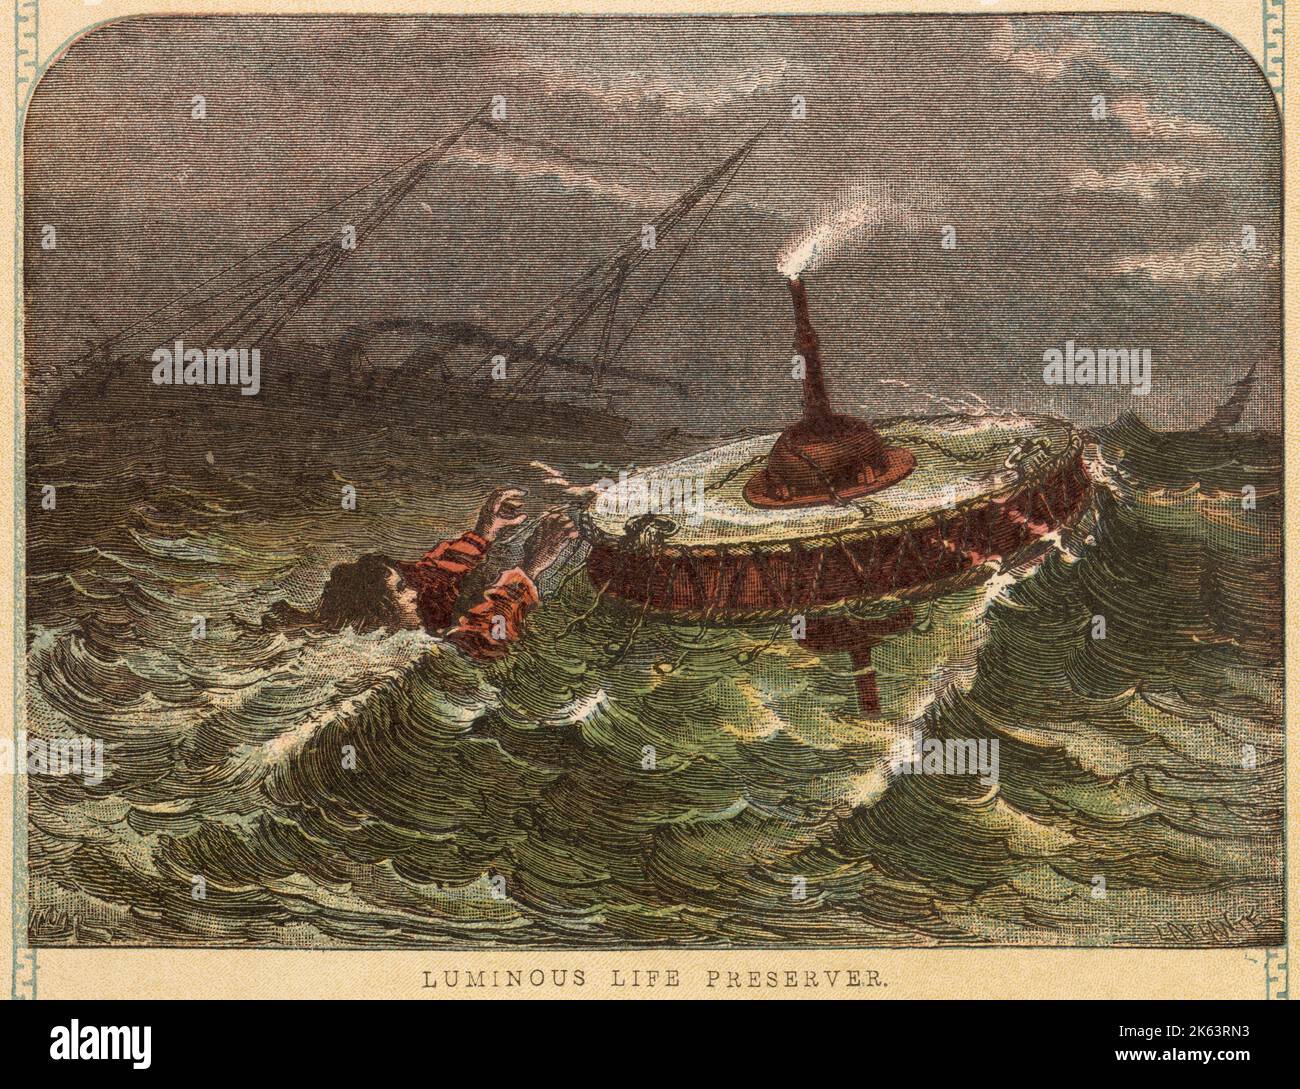 Leuchtender Lebensretter, an den sich die Überlebenden eines Schiffswracks in der Hoffnung auf Rettung Klammern können. Datum: Ca. 1860 Stockfoto